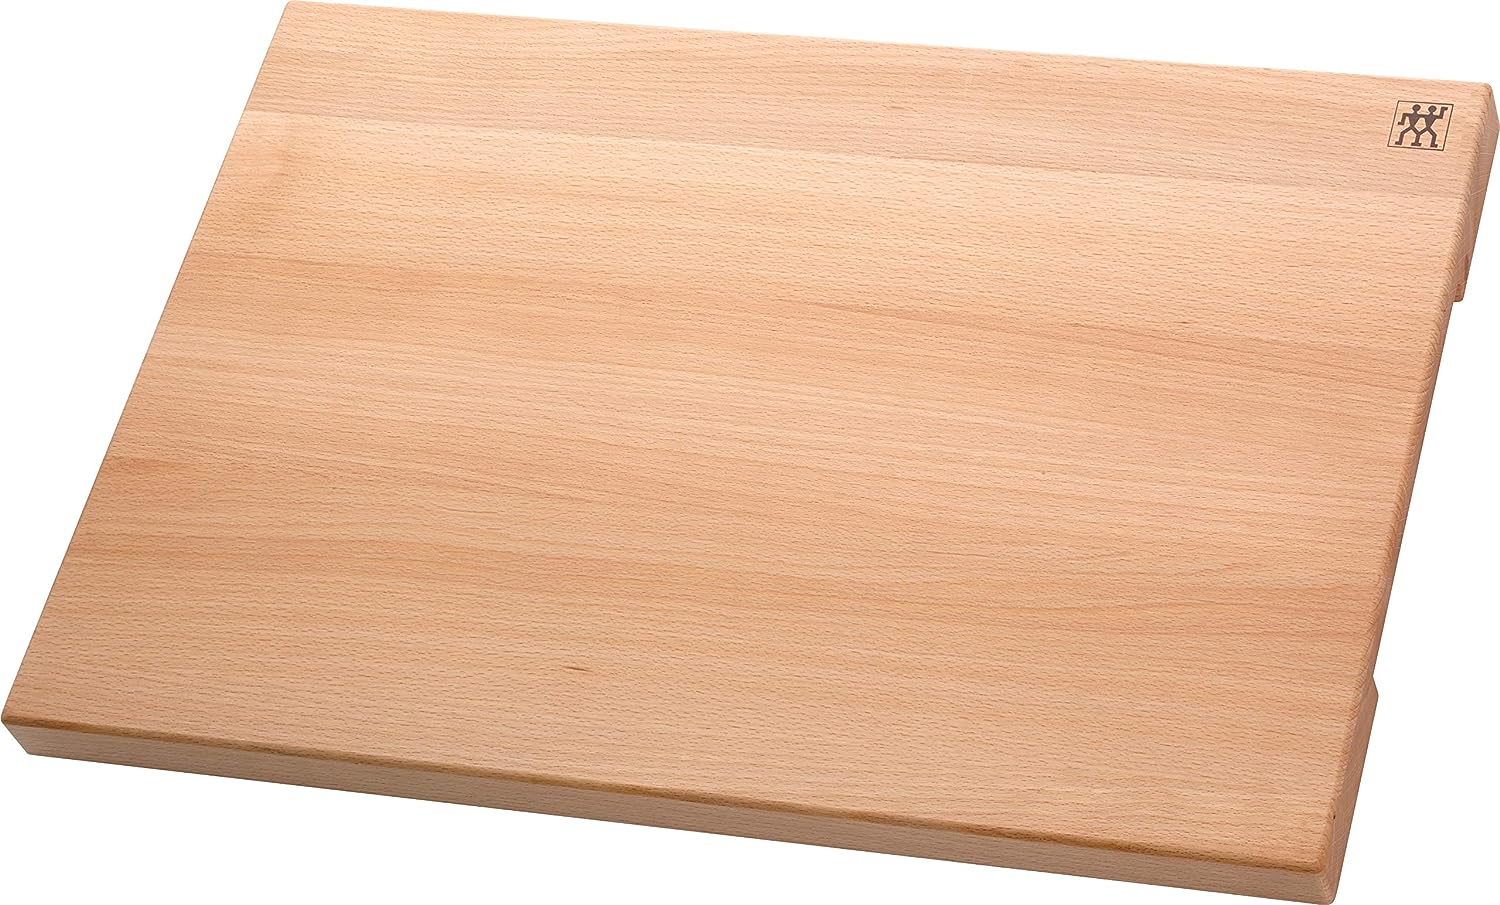 ZWILLING Schneidbrett aus massiven Holz, Buche, Braun, 60 x 40 x 3 cm